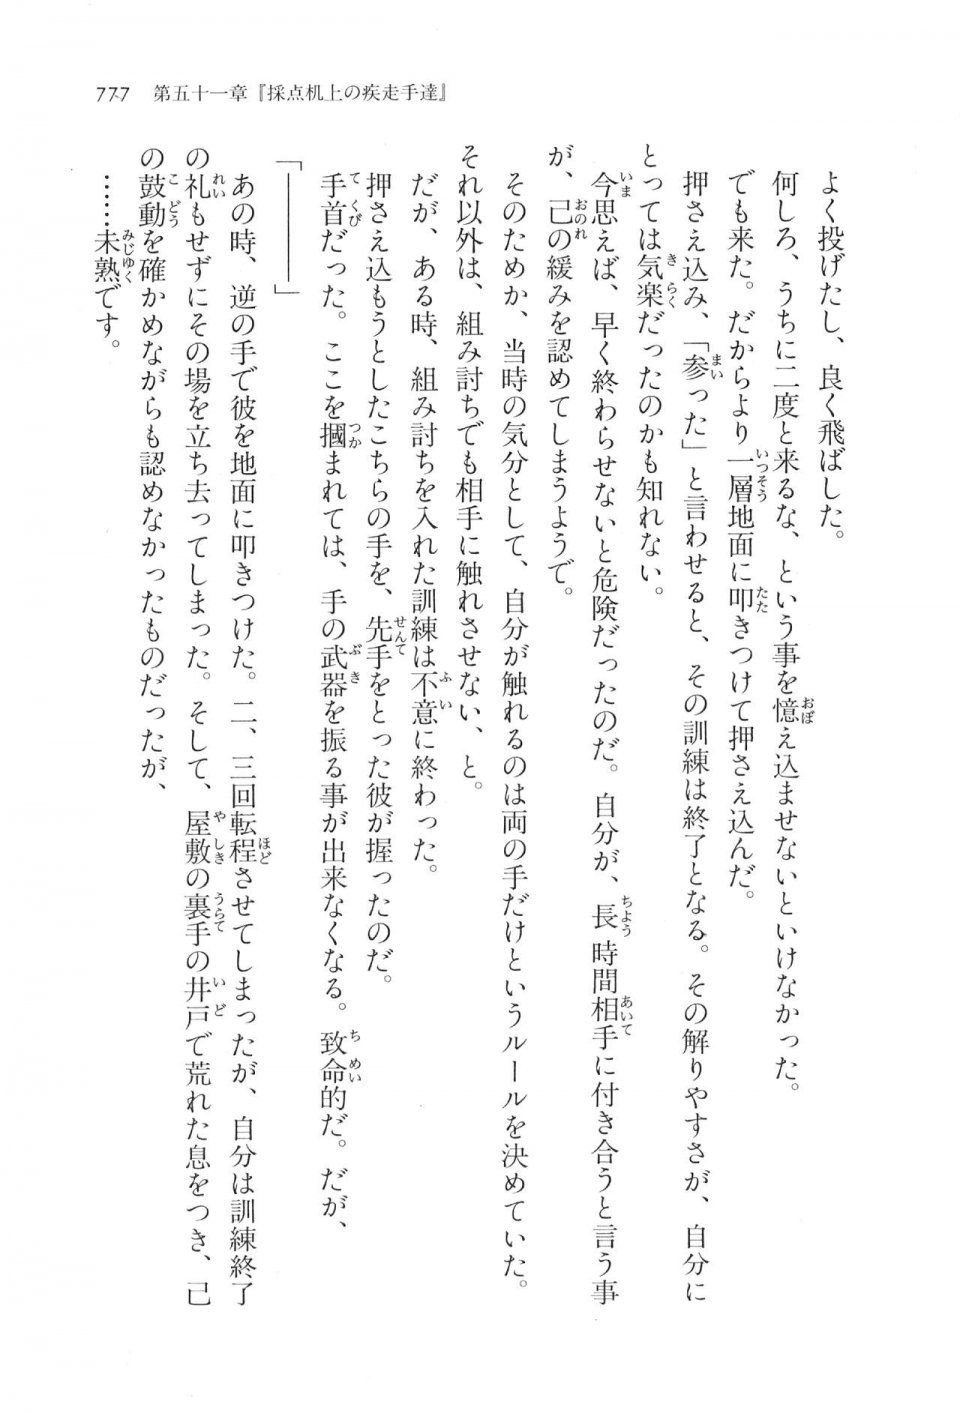 Kyoukai Senjou no Horizon LN Vol 17(7B) - Photo #779